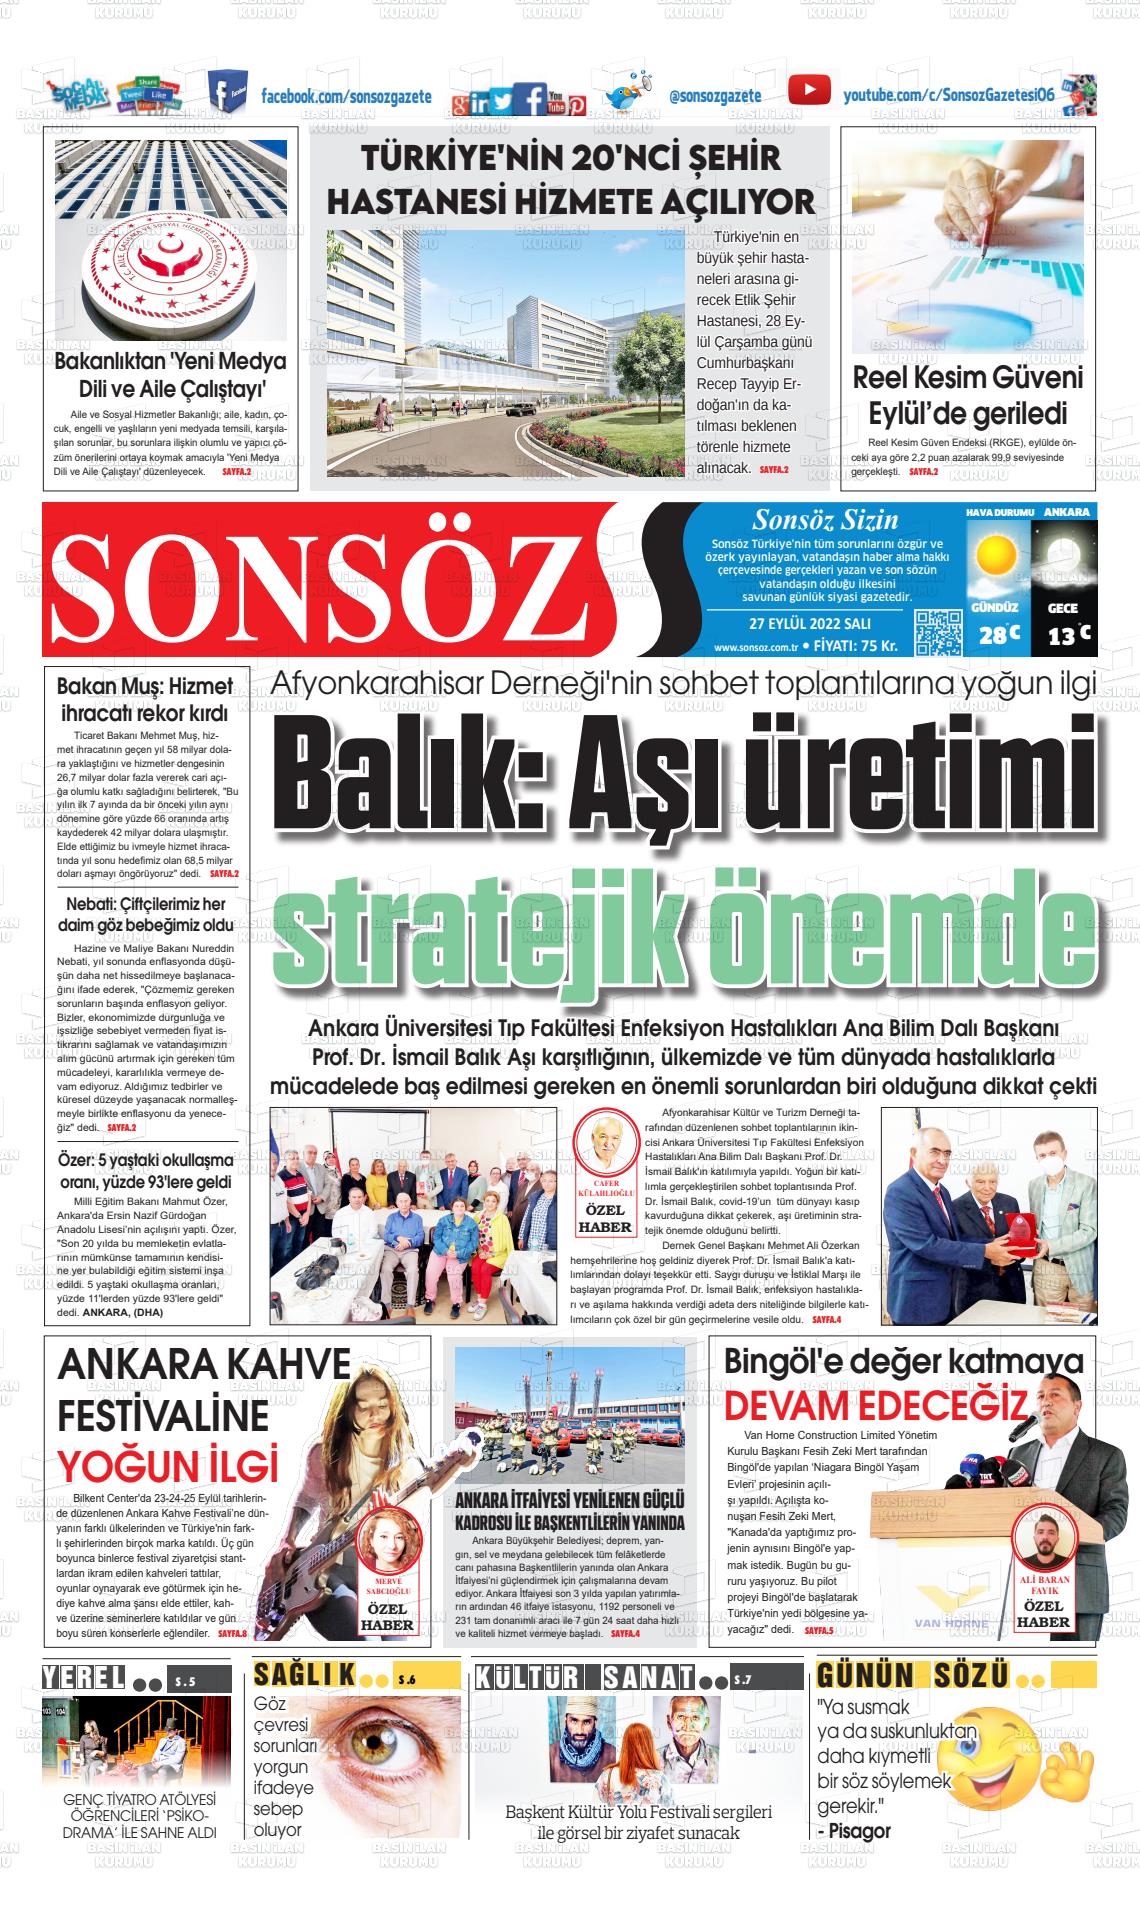 27 Eylül 2022 Ankara Sonsöz Gazete Manşeti